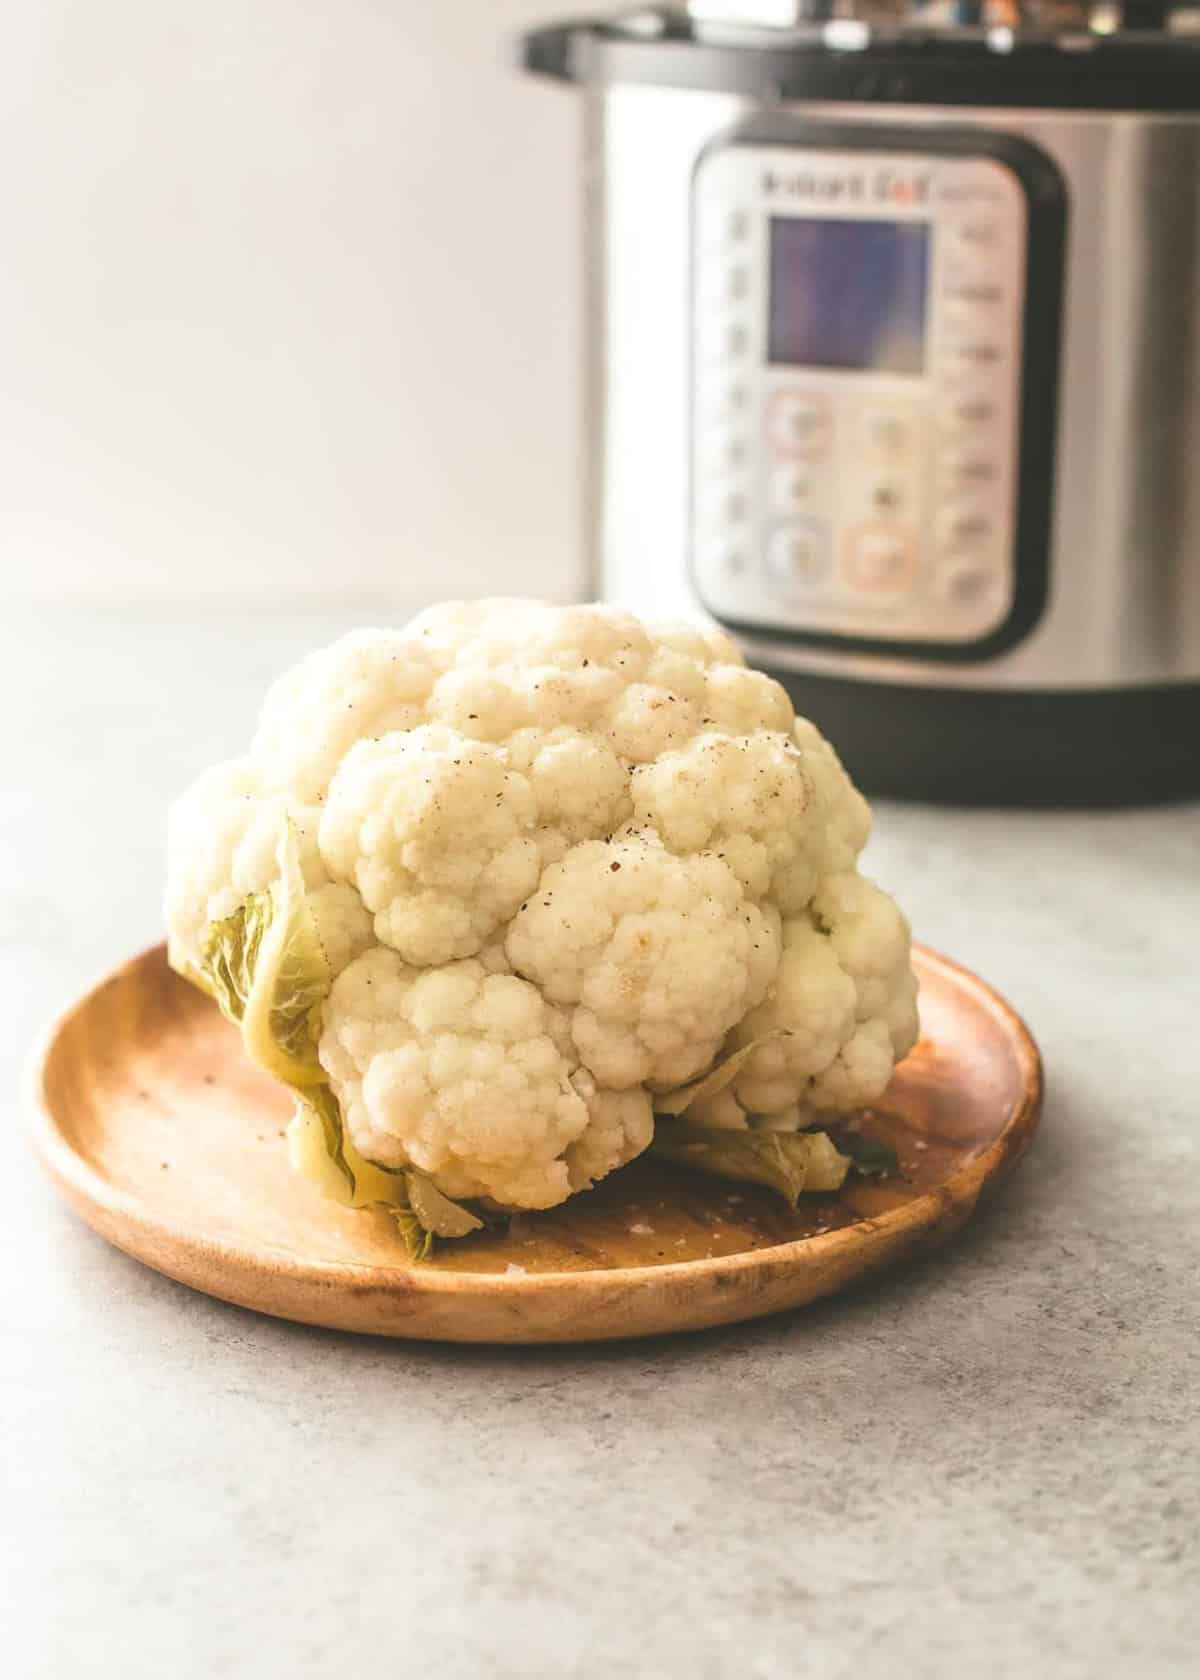 steam a whole head of cauliflower